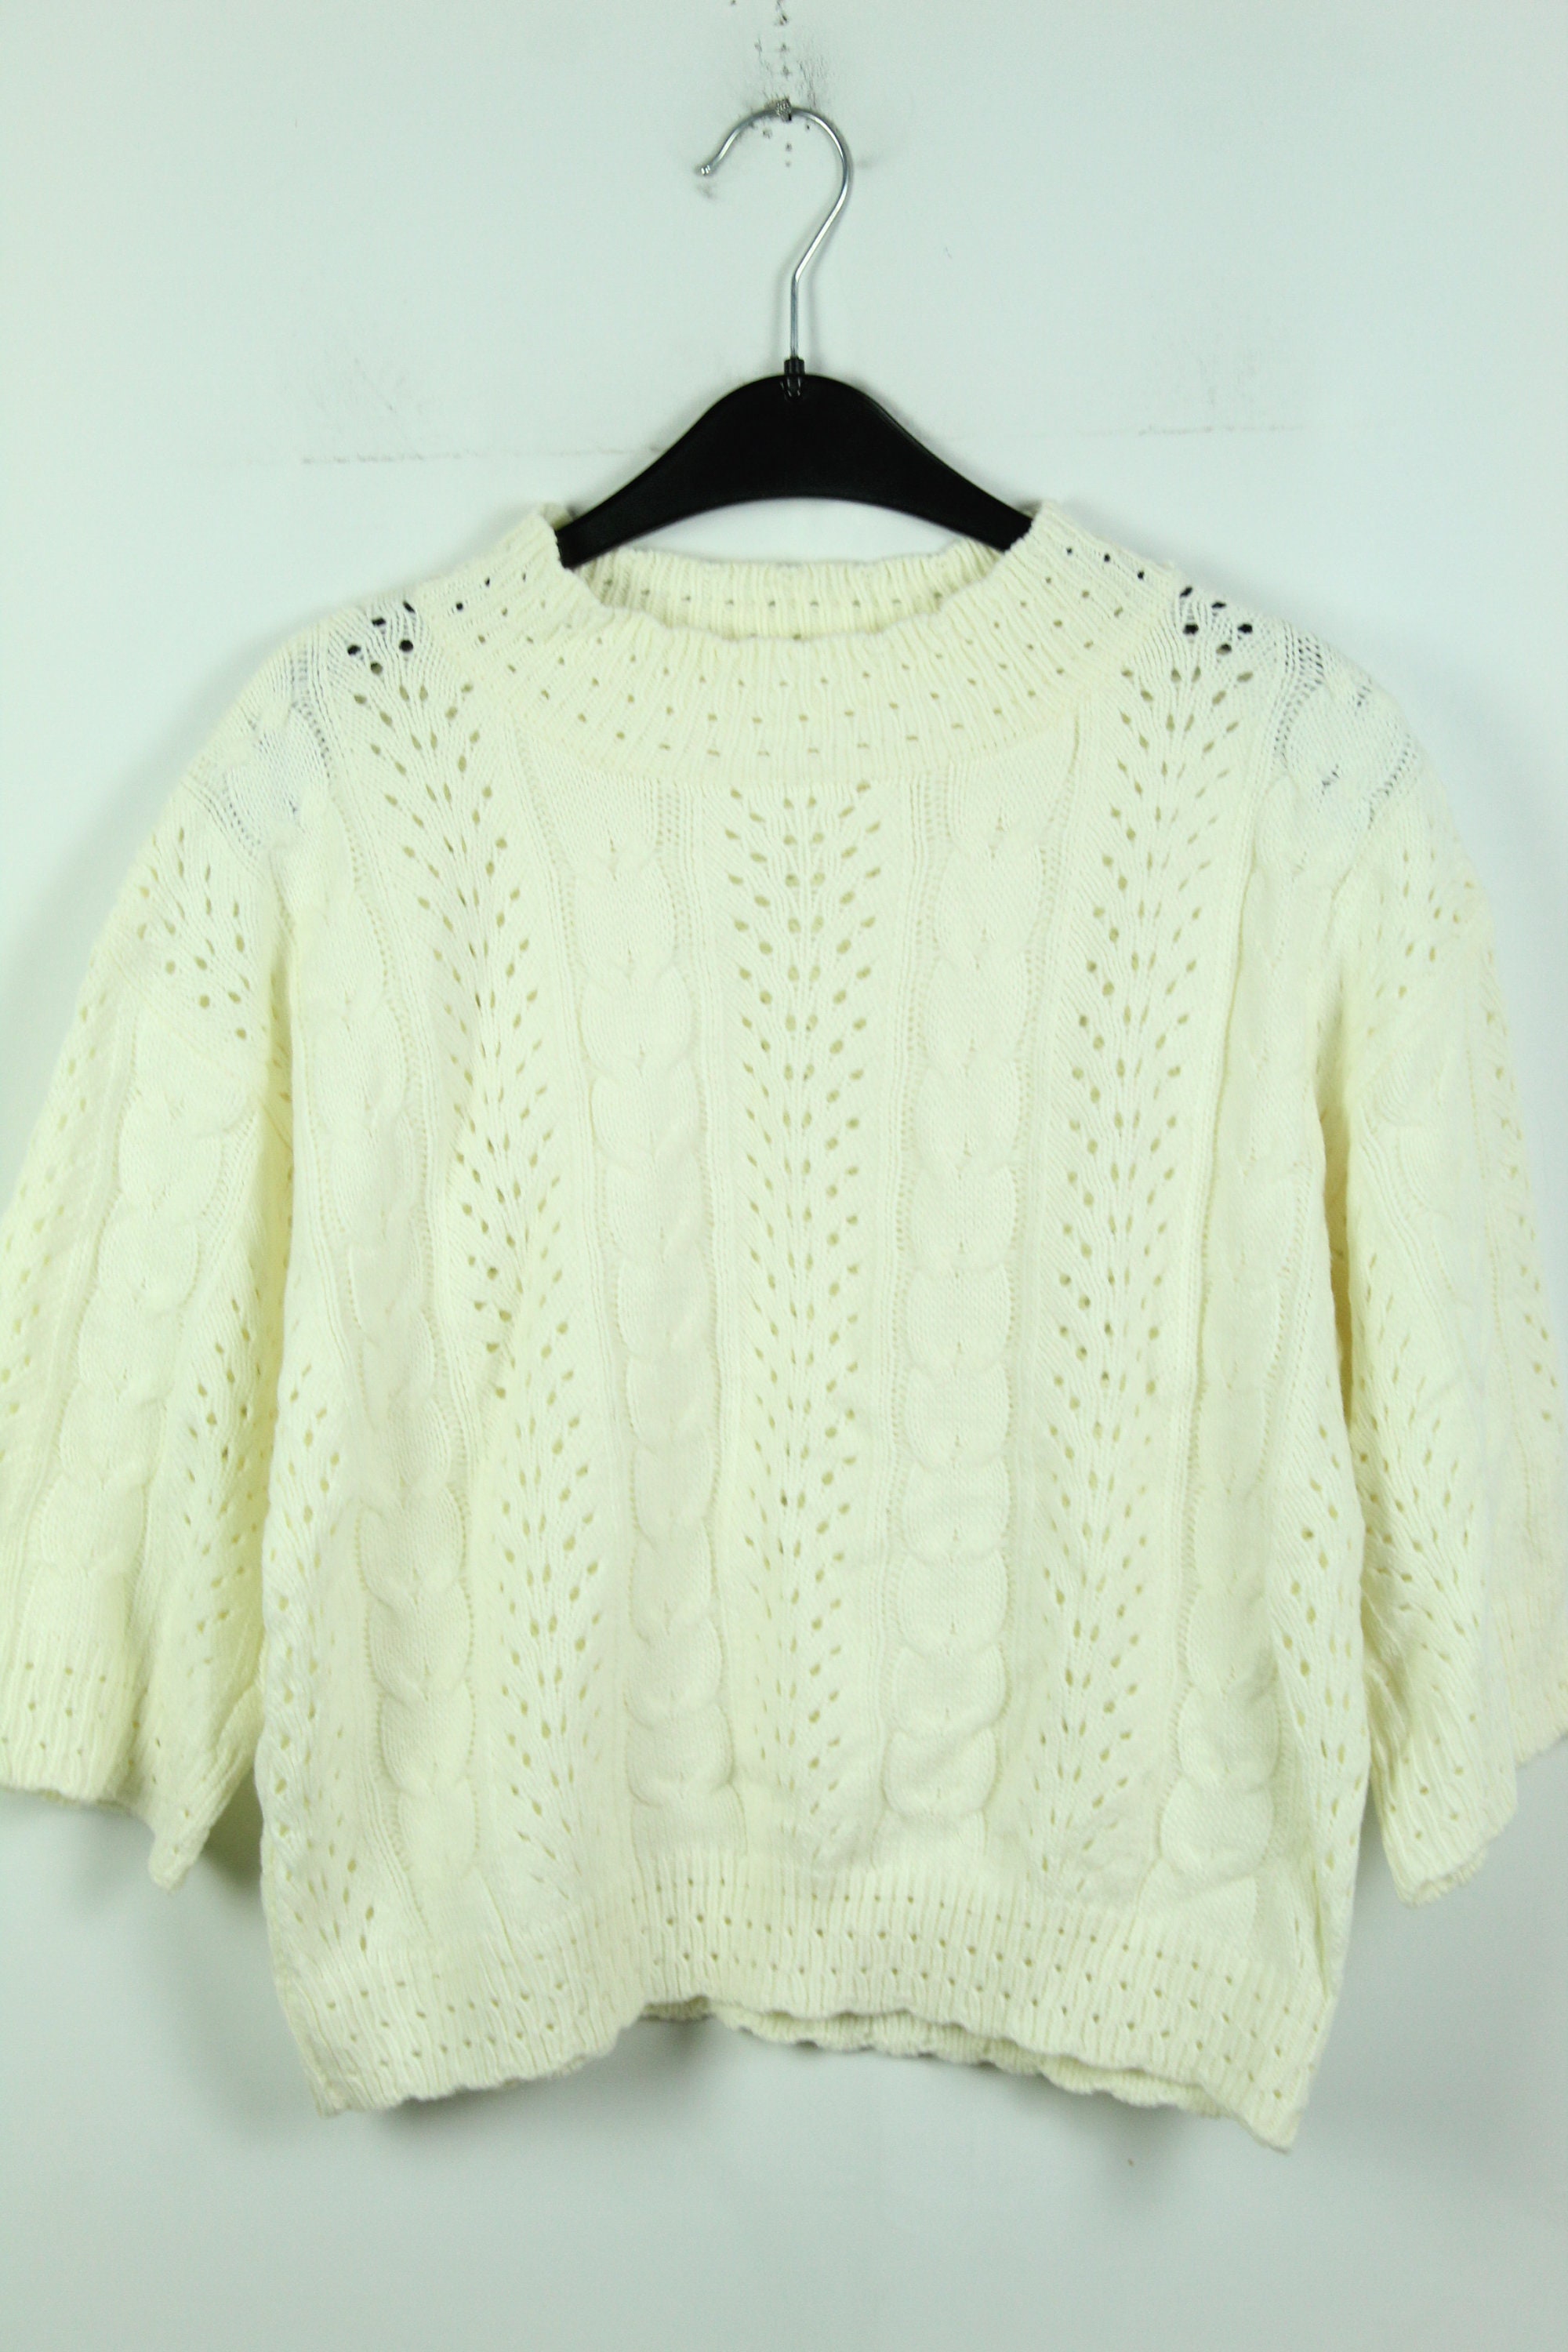 Vintage 90s Sweater Size M Vintage Pullover 90s Jumper 90s - Etsy UK